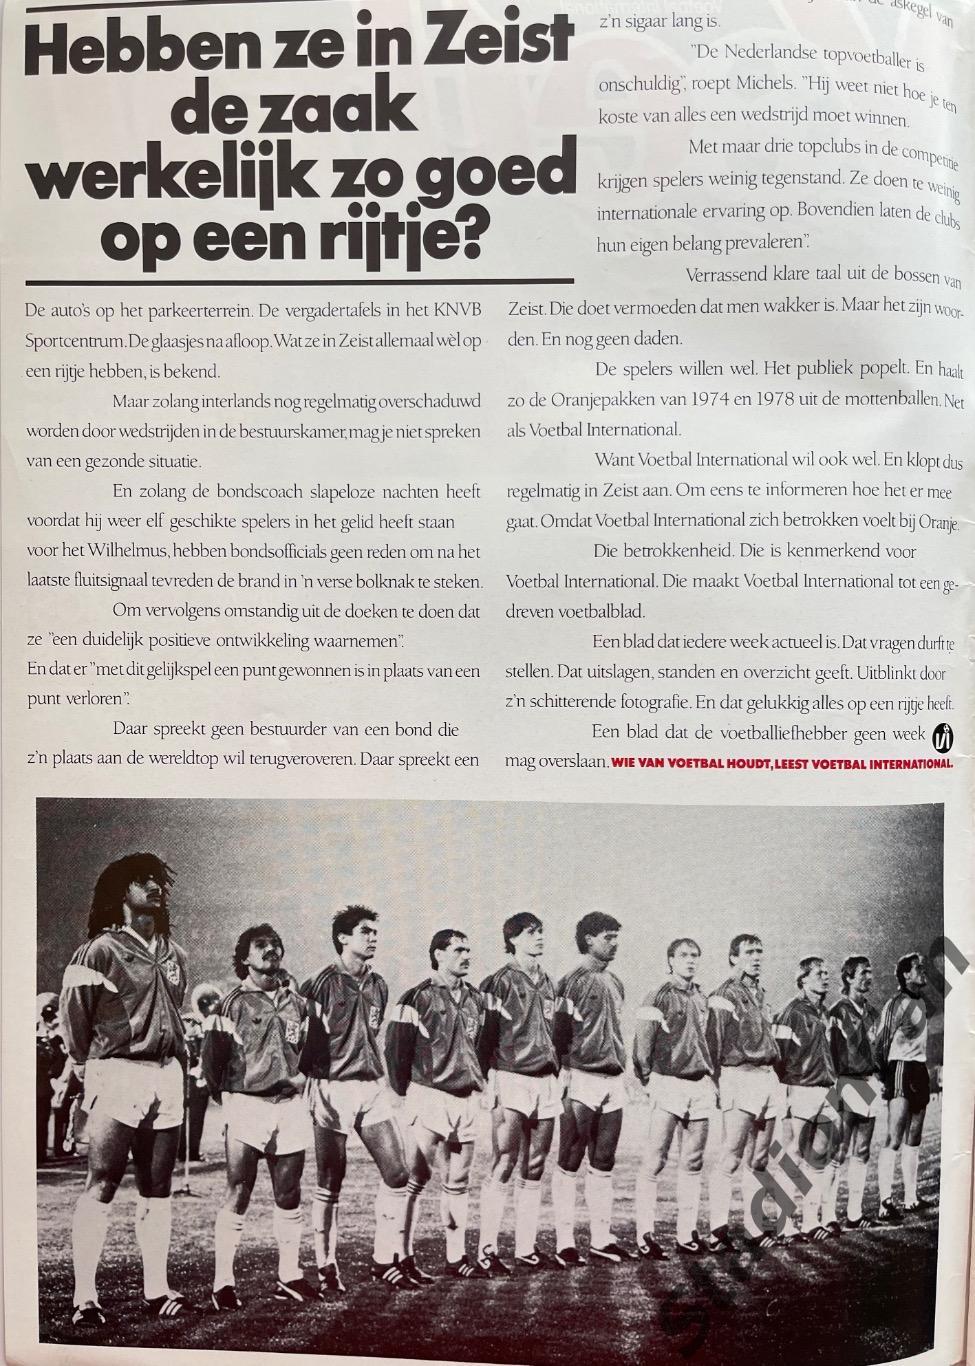 Журнал Voetbal - 1985 год. 4